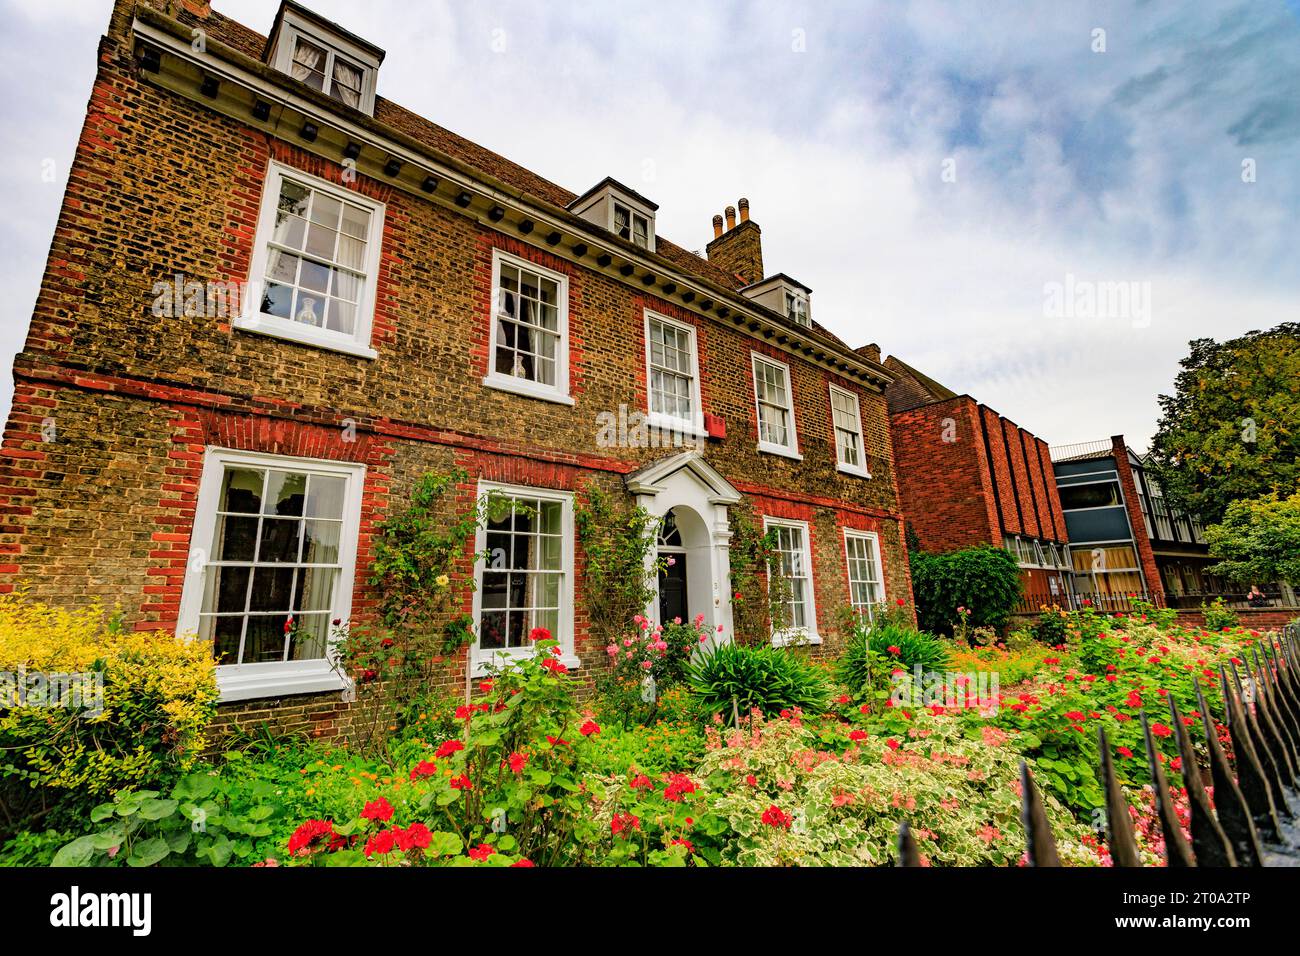 Die unverwechselbare und attraktive georgianische Architektur und der farbenfrohe Garten des No.3 Palace Green in Ely, Cambridgeshire, England, Großbritannien Stockfoto